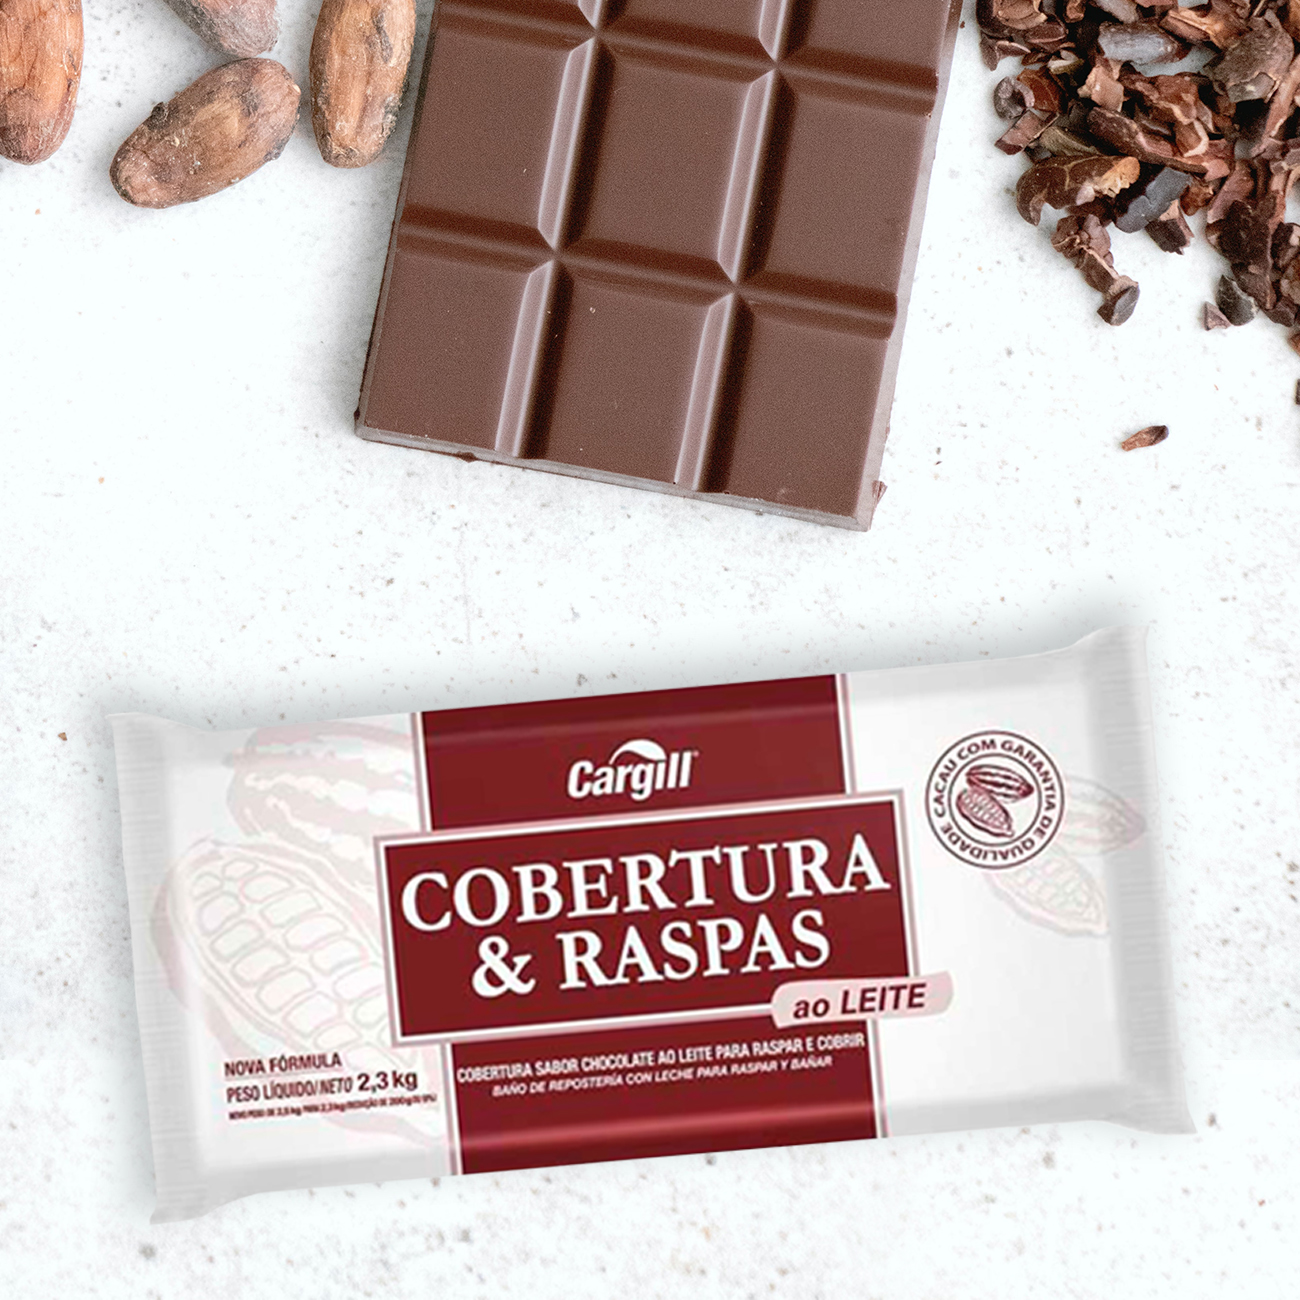 Cobertura de Chocolate em Barra Cargill Cobertura e Raspas ao Leite 2,3kg